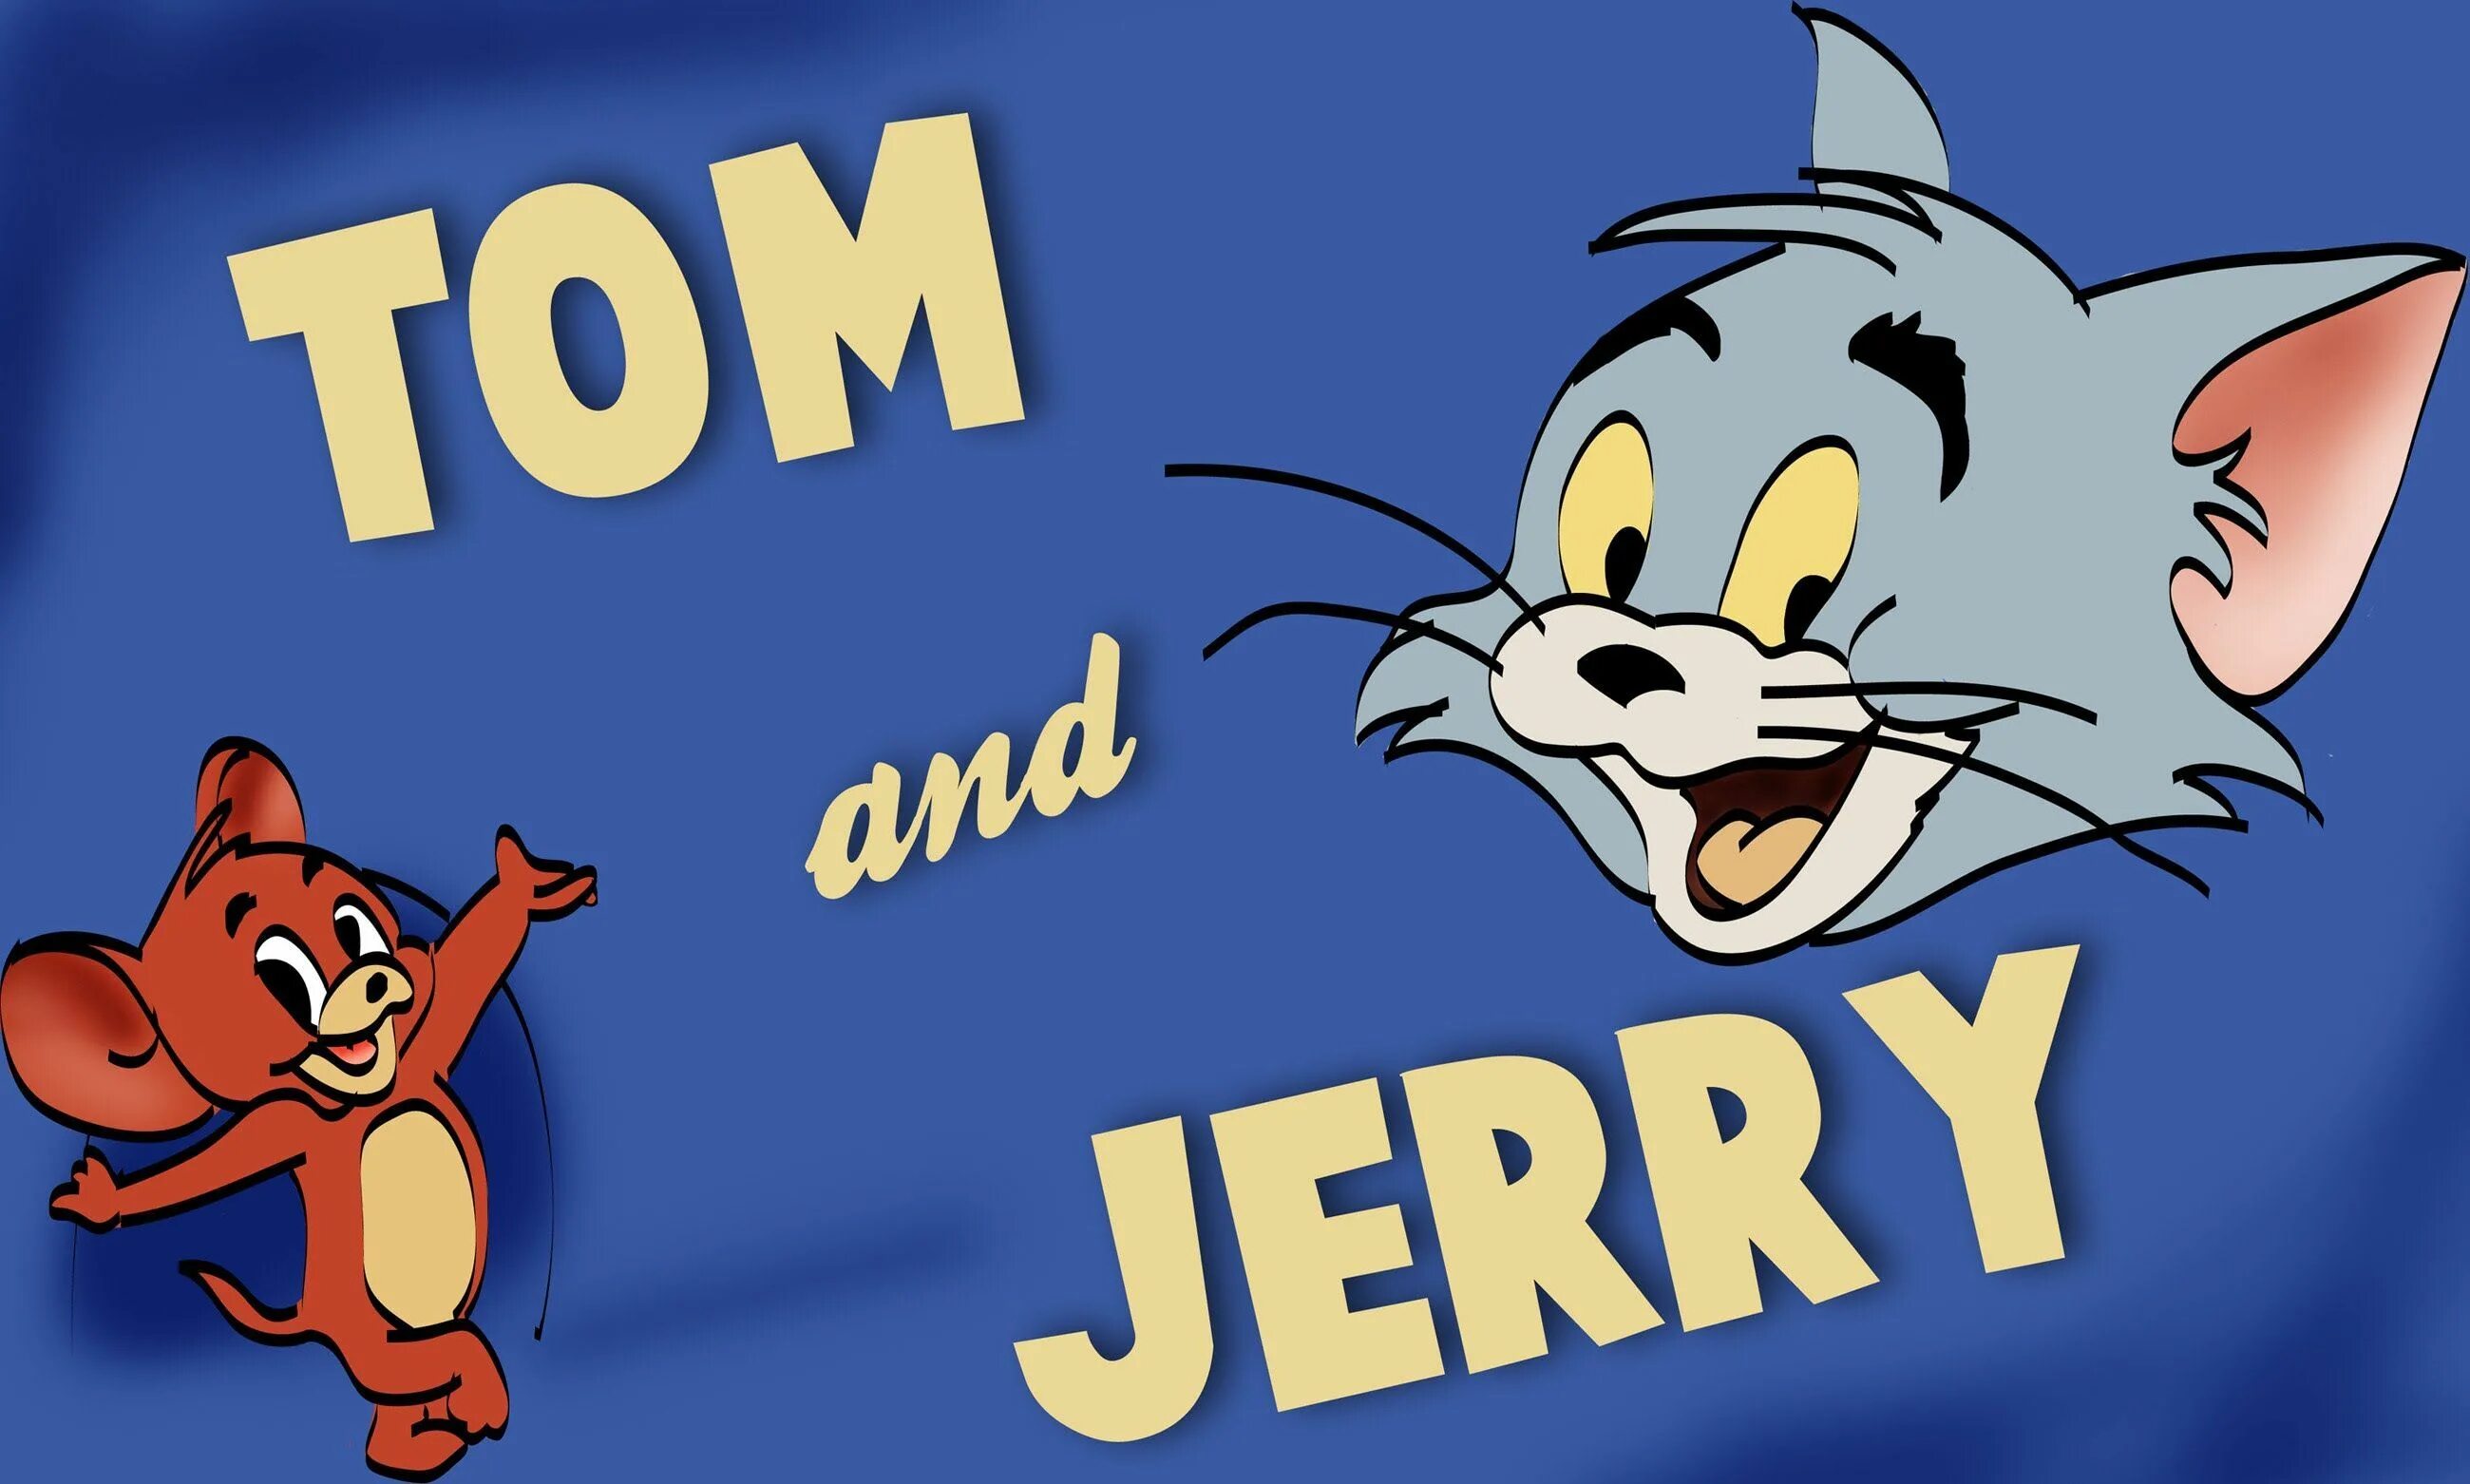 В каком году вышел том и джерри. Tom and Jerry. Том и Джерри обложка мультфильма. NJV B LKTHB. Том и Джерри картинки.